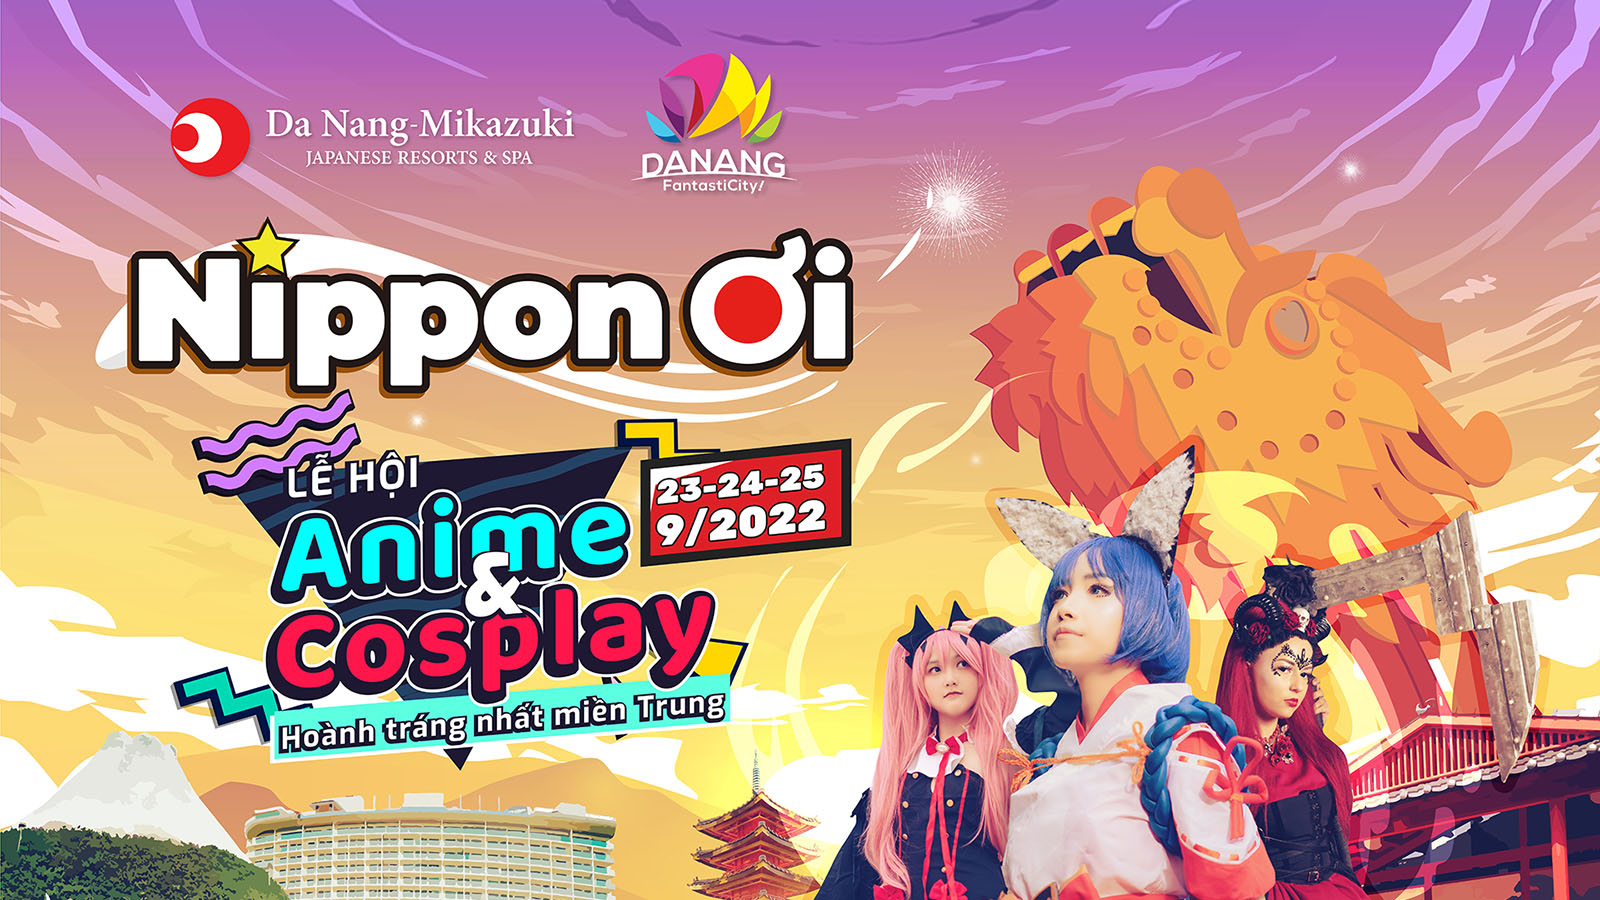 NIPPON ƠI: Lễ hội Anime, Manga, Cosplay lớn nhất miền Trung tại Danang  Mikazuki - Cổng thông tin du lịch thành phố Đà Nẵng